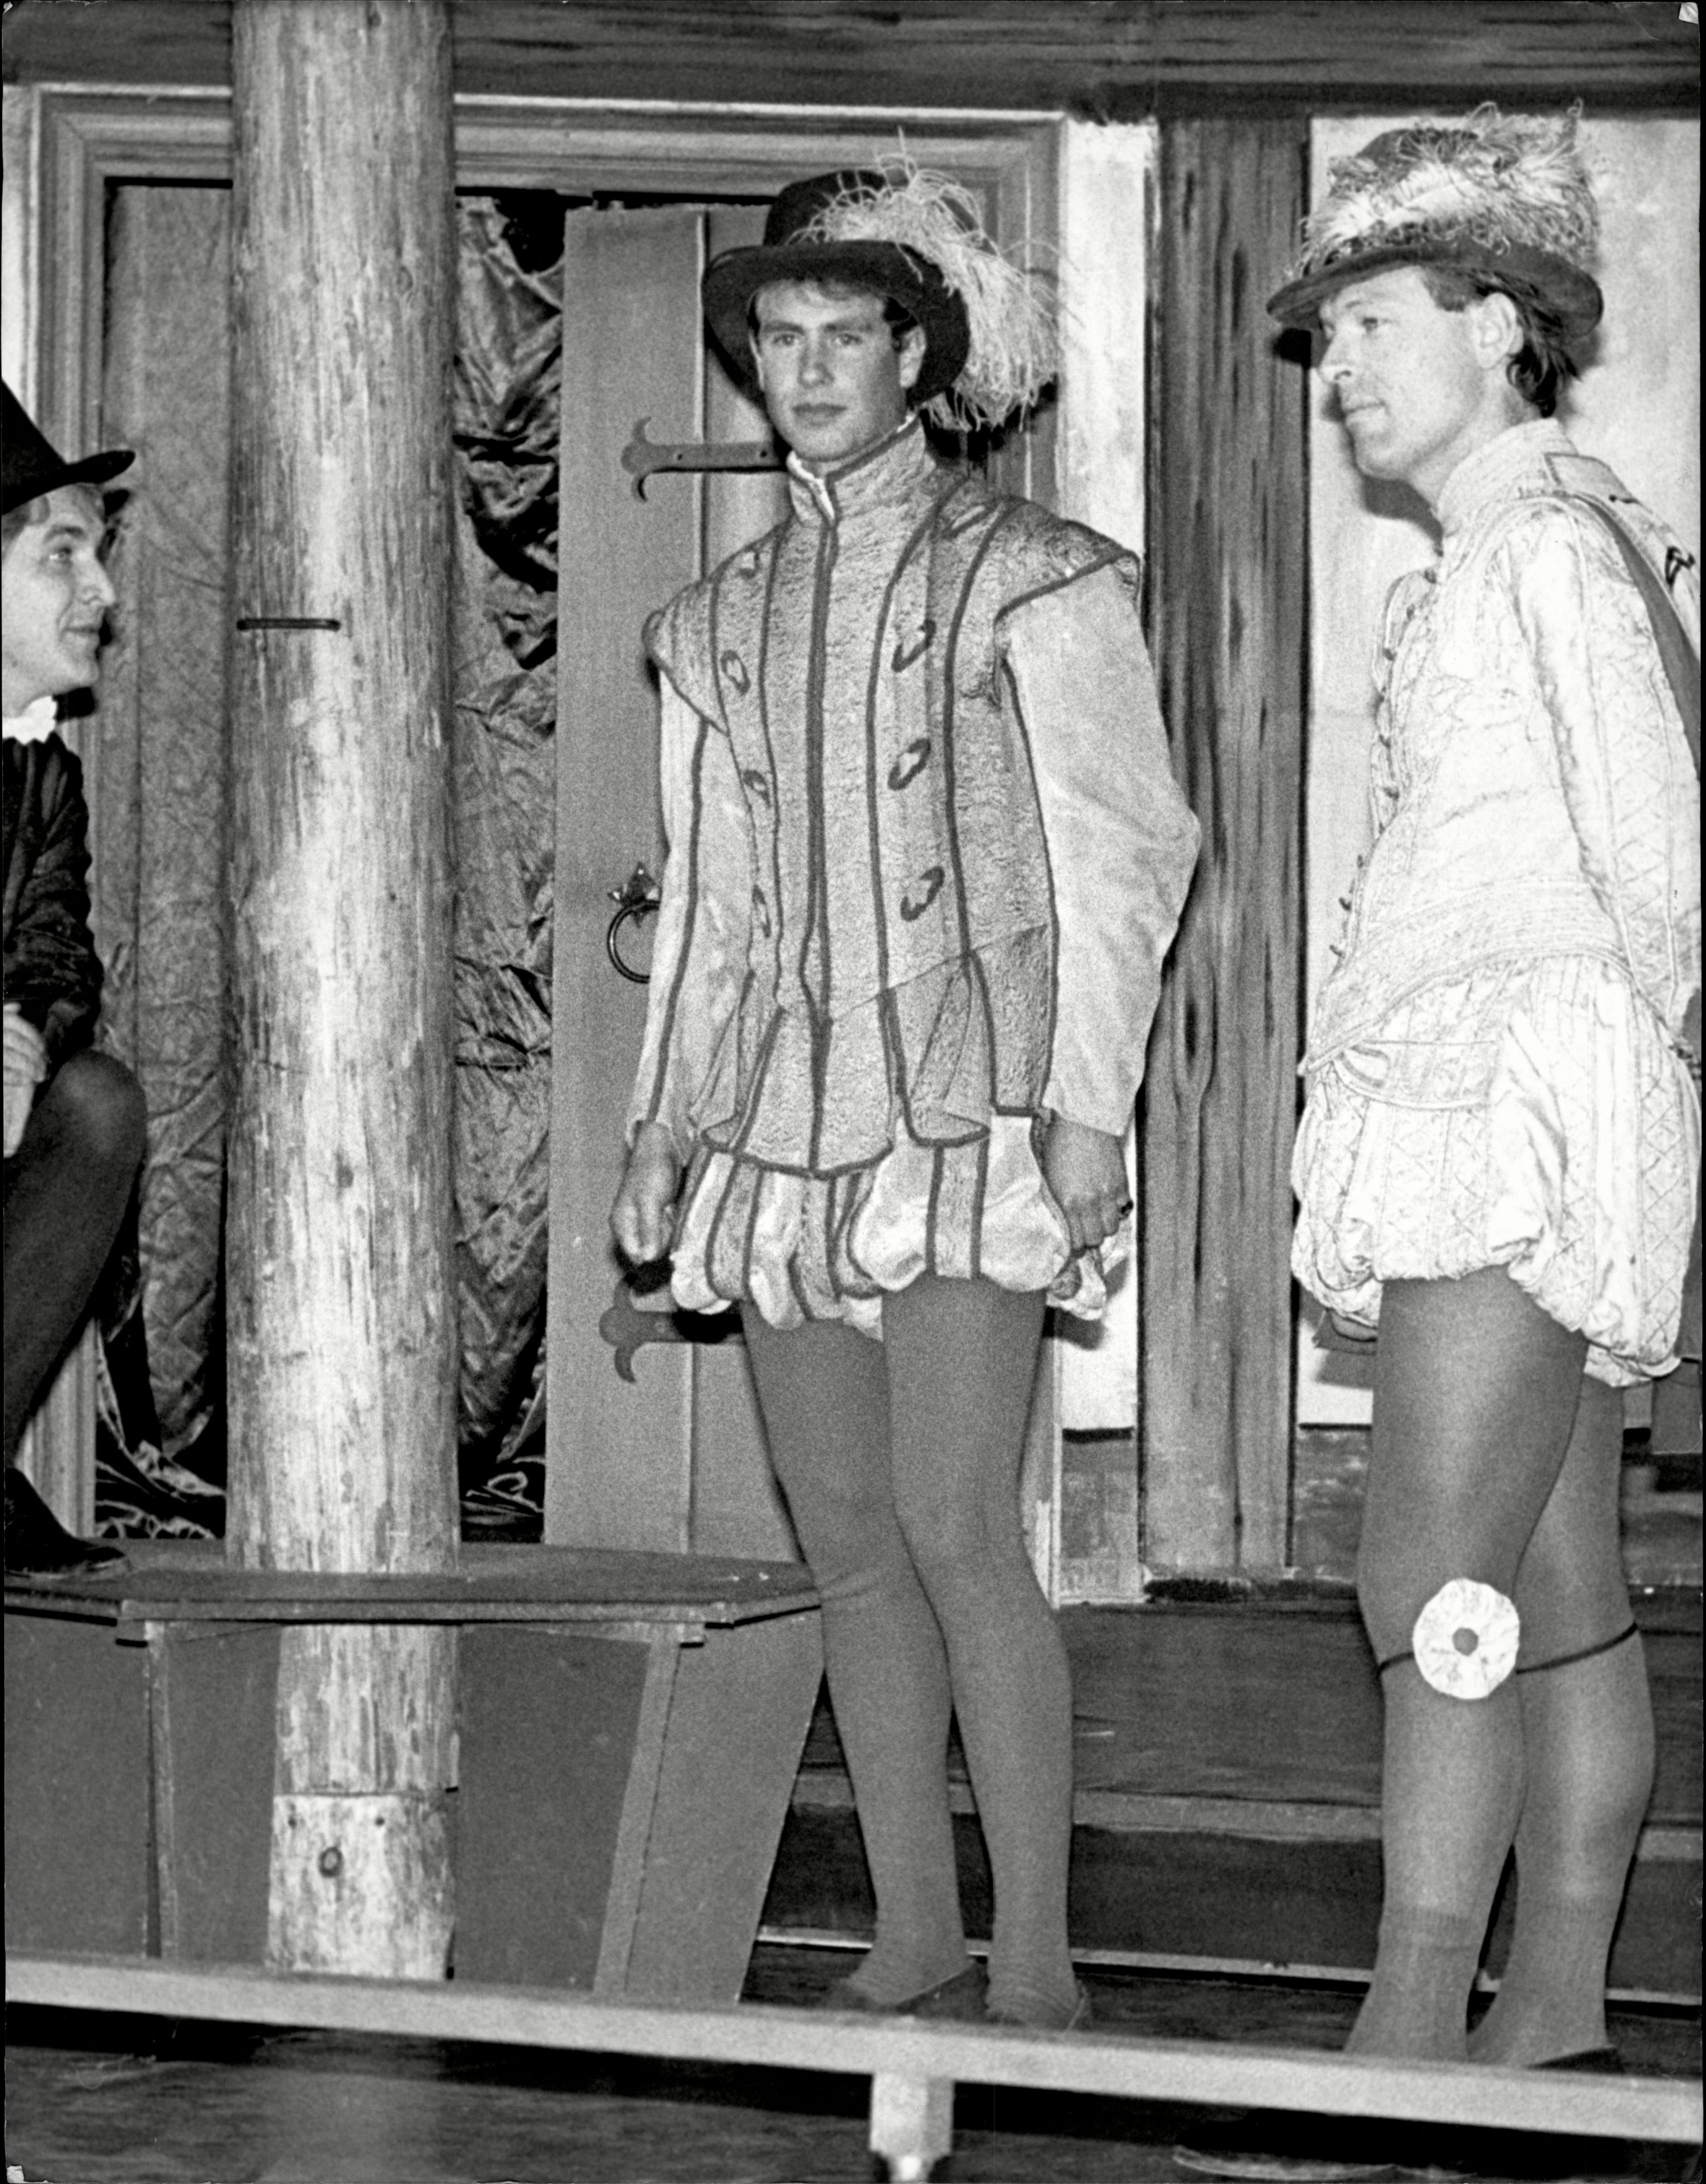 Après son service militaire, Edward a poursuivi sa passion pour le théâtre, que l'on voit ici sur scène en costume en 1985.